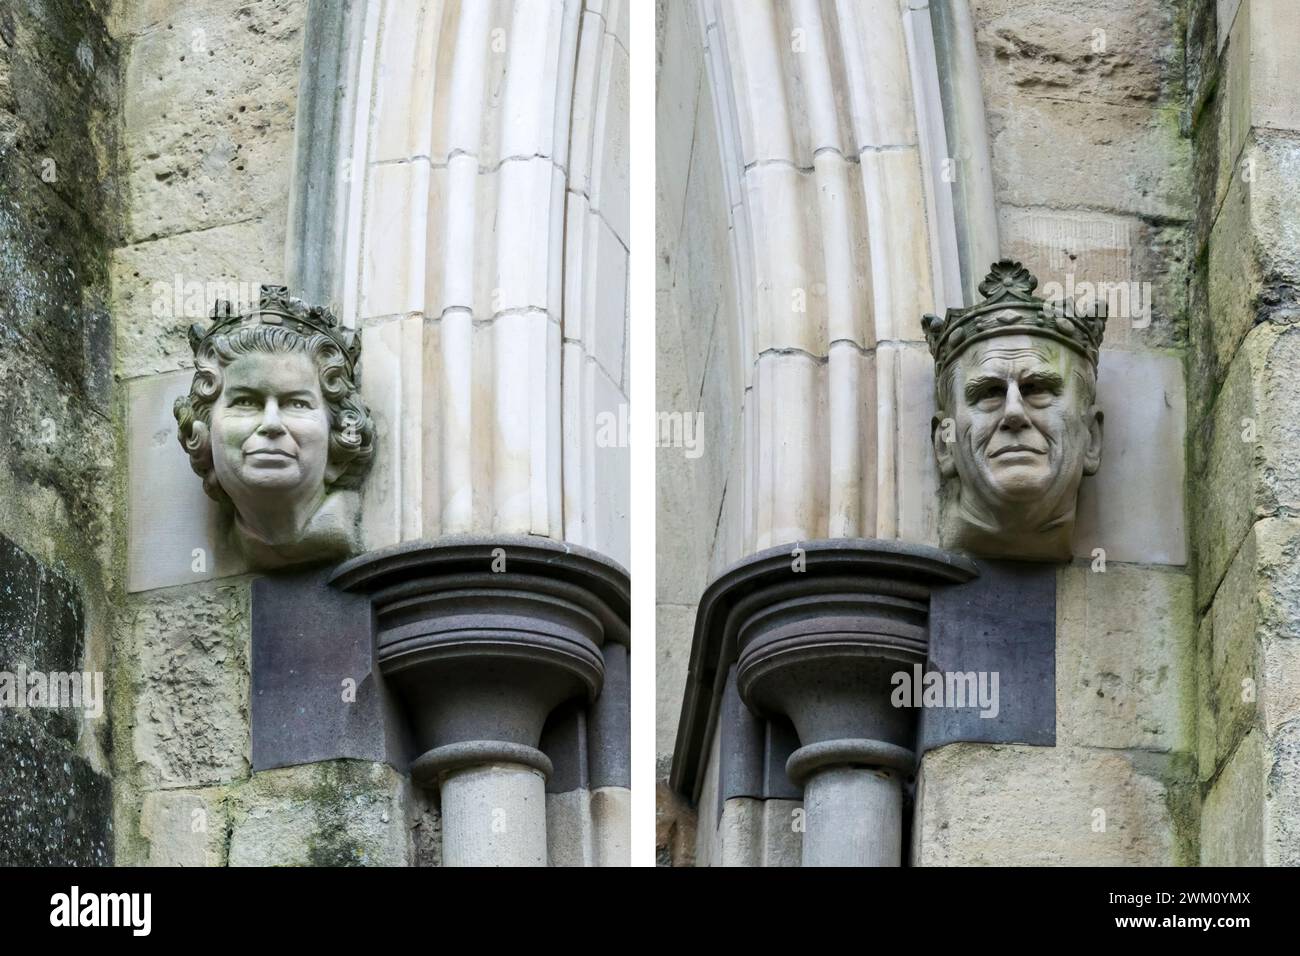 Geschnitzte Korbelköpfe von Königin Elisabeth II. Und dem Duke of Edinburgh auf beiden Seiten der Westtür der Chichester Cathedral. Sie wurden 2001 installiert. Stockfoto